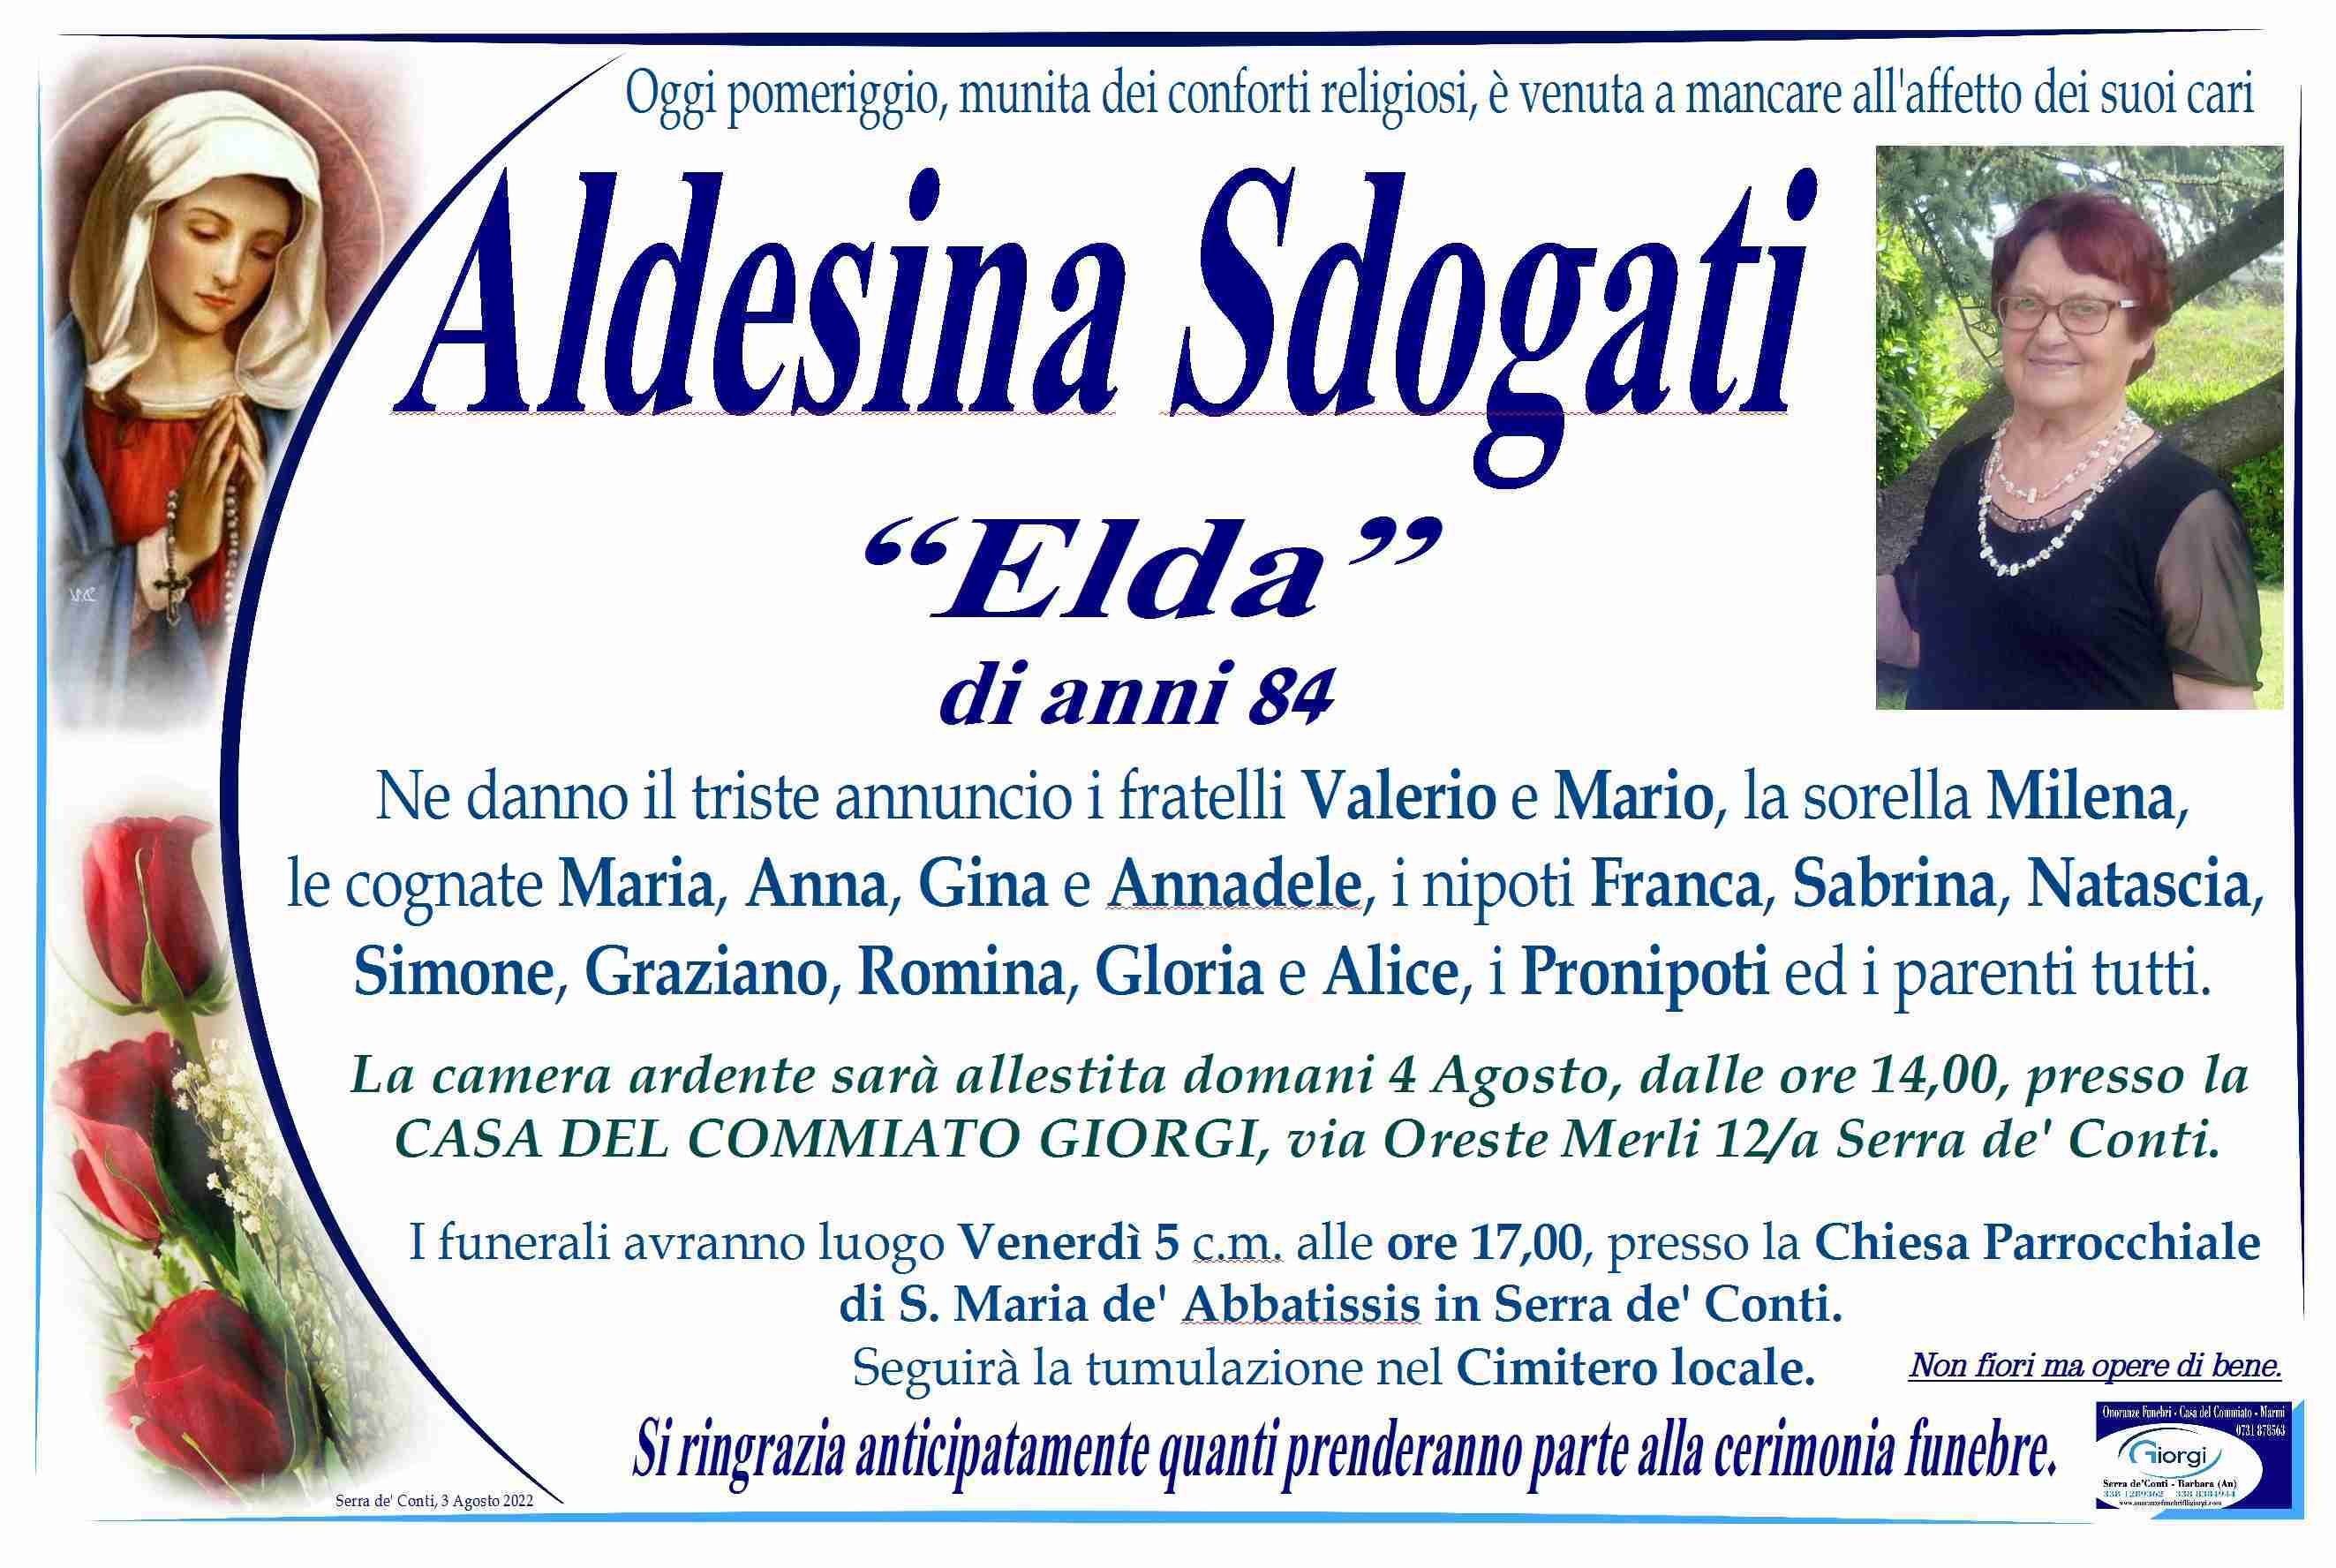 Aldesina Sdogati